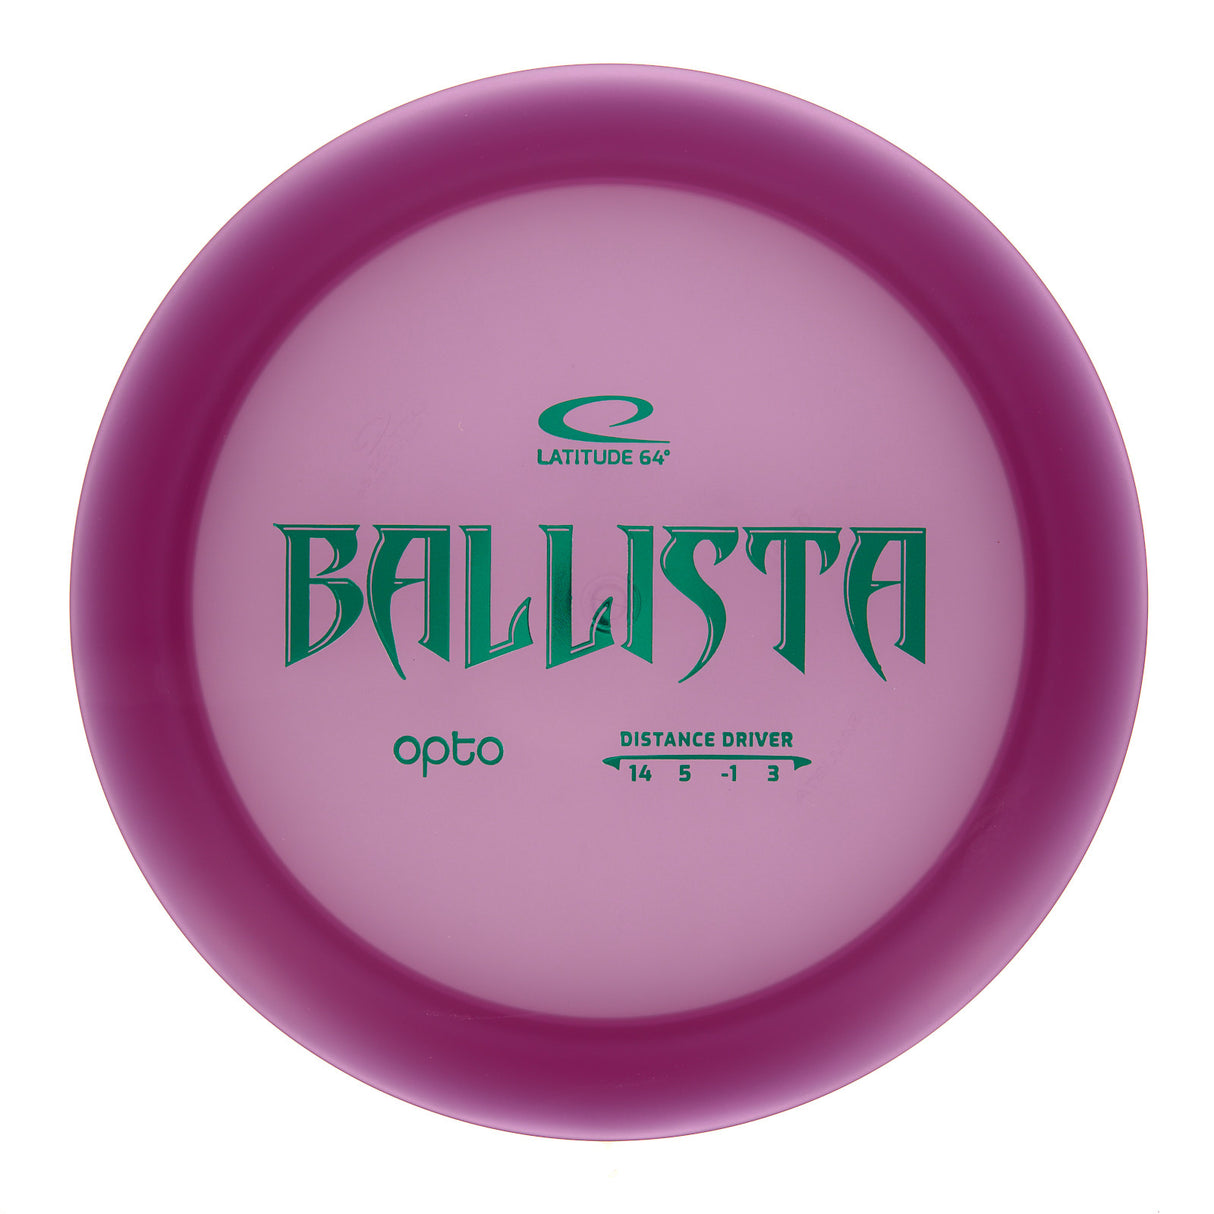 Latitude 64 Ballista - Opto 172g | Style 0001